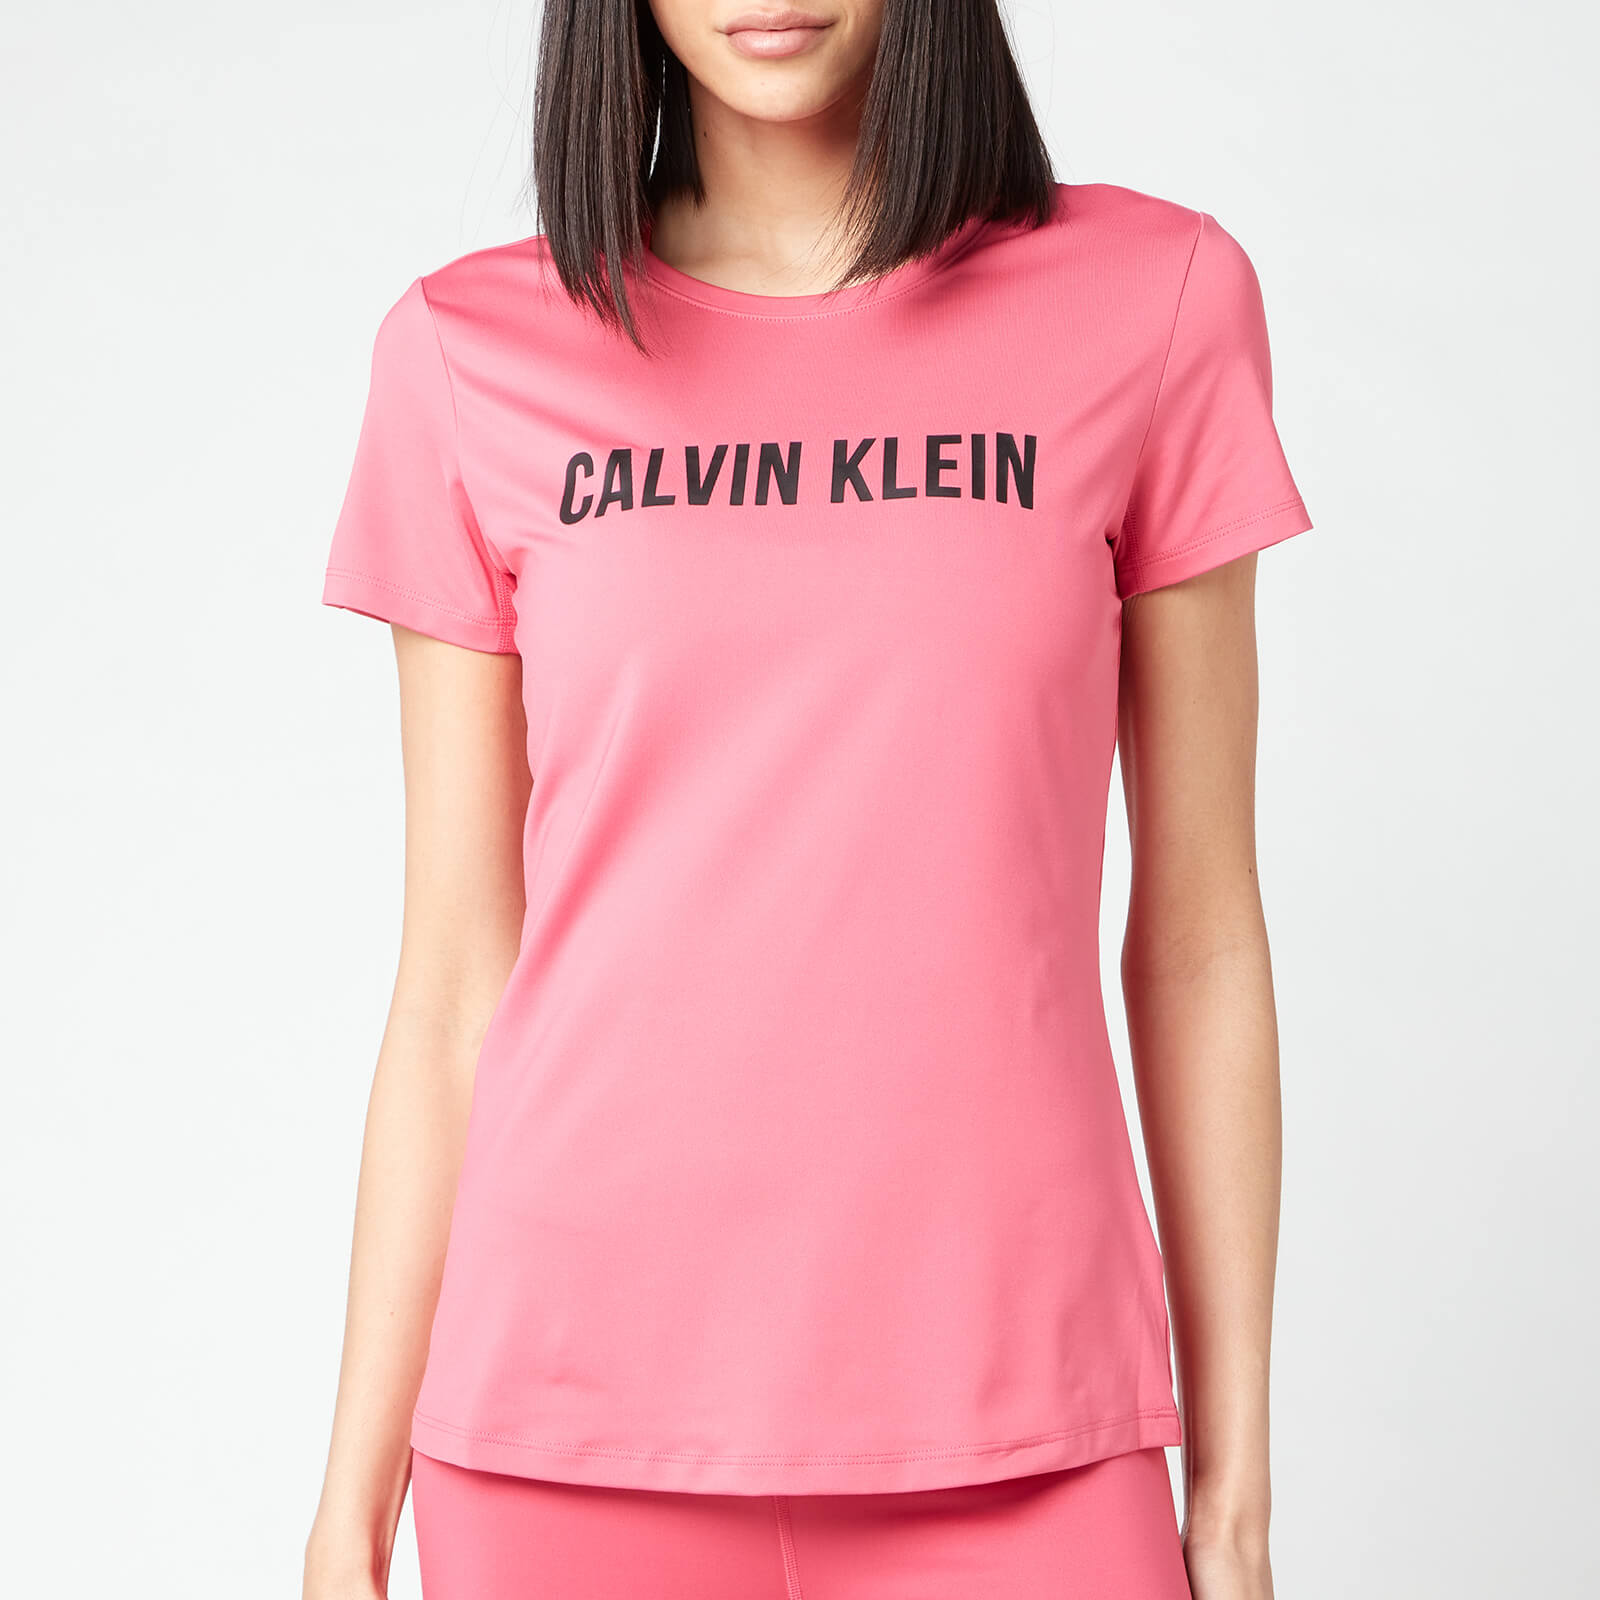 Calvin Klein Performance Women's Short Sleeve Logo T-Shirt - City Pink - XS